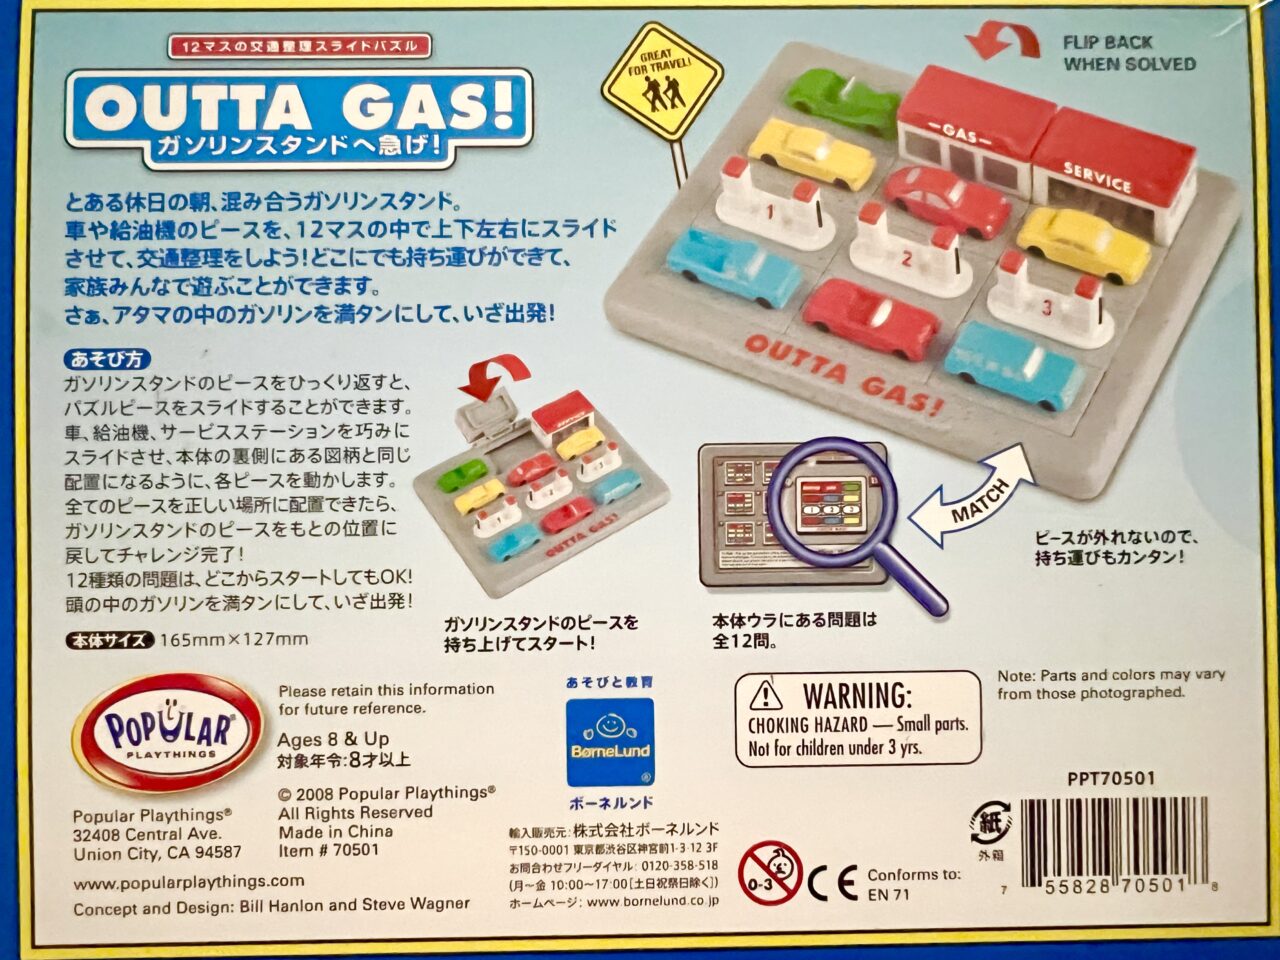 ボーネルンドの知育玩具「OUTTA GAS!ガソリンスタンドへ急げ！」の遊び方です。